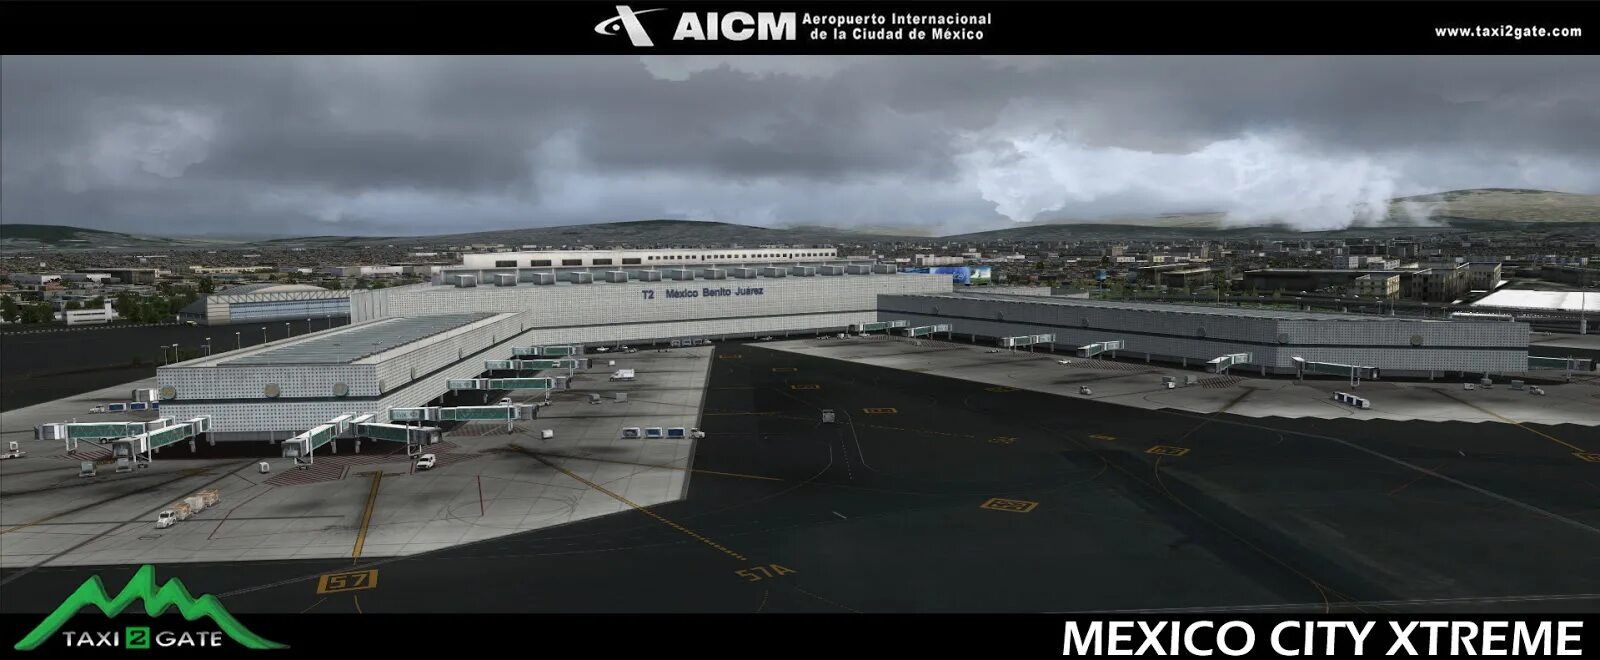 Аэропорт 03. Ils аэропорта MMMX. Мехико-Сити.